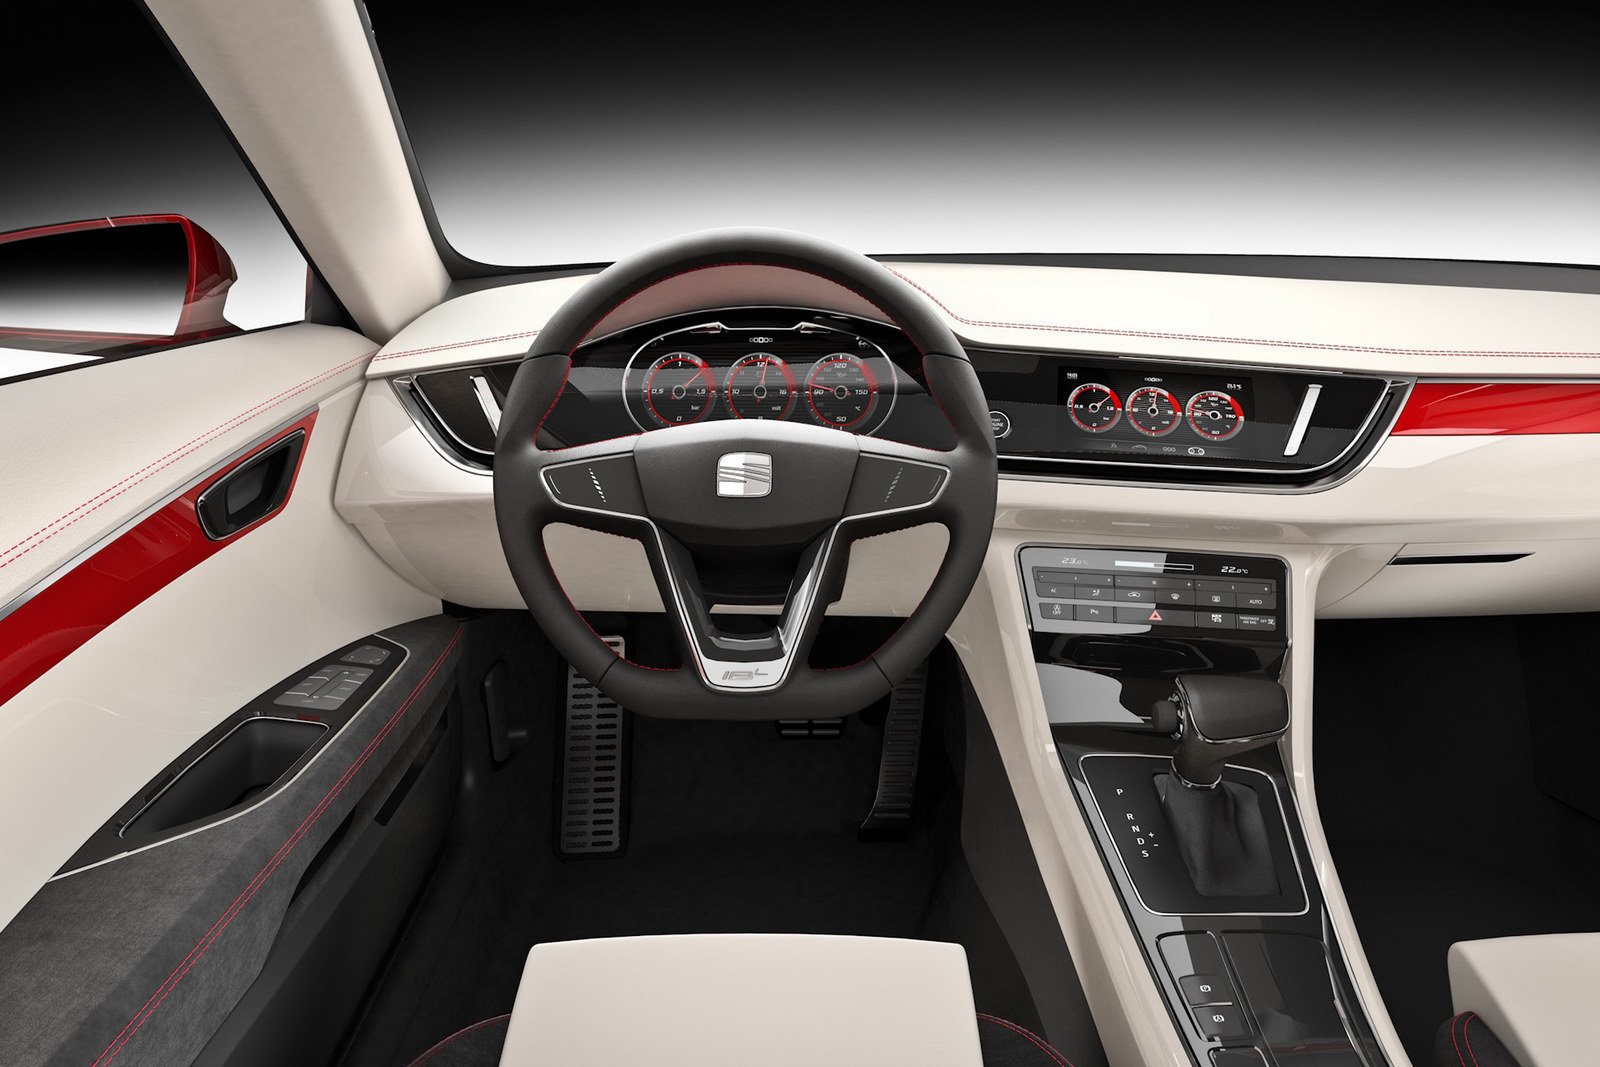 Interiorul lui Seat IBL mizeaza pe simplitate, dar respira high-tech si caracter premium